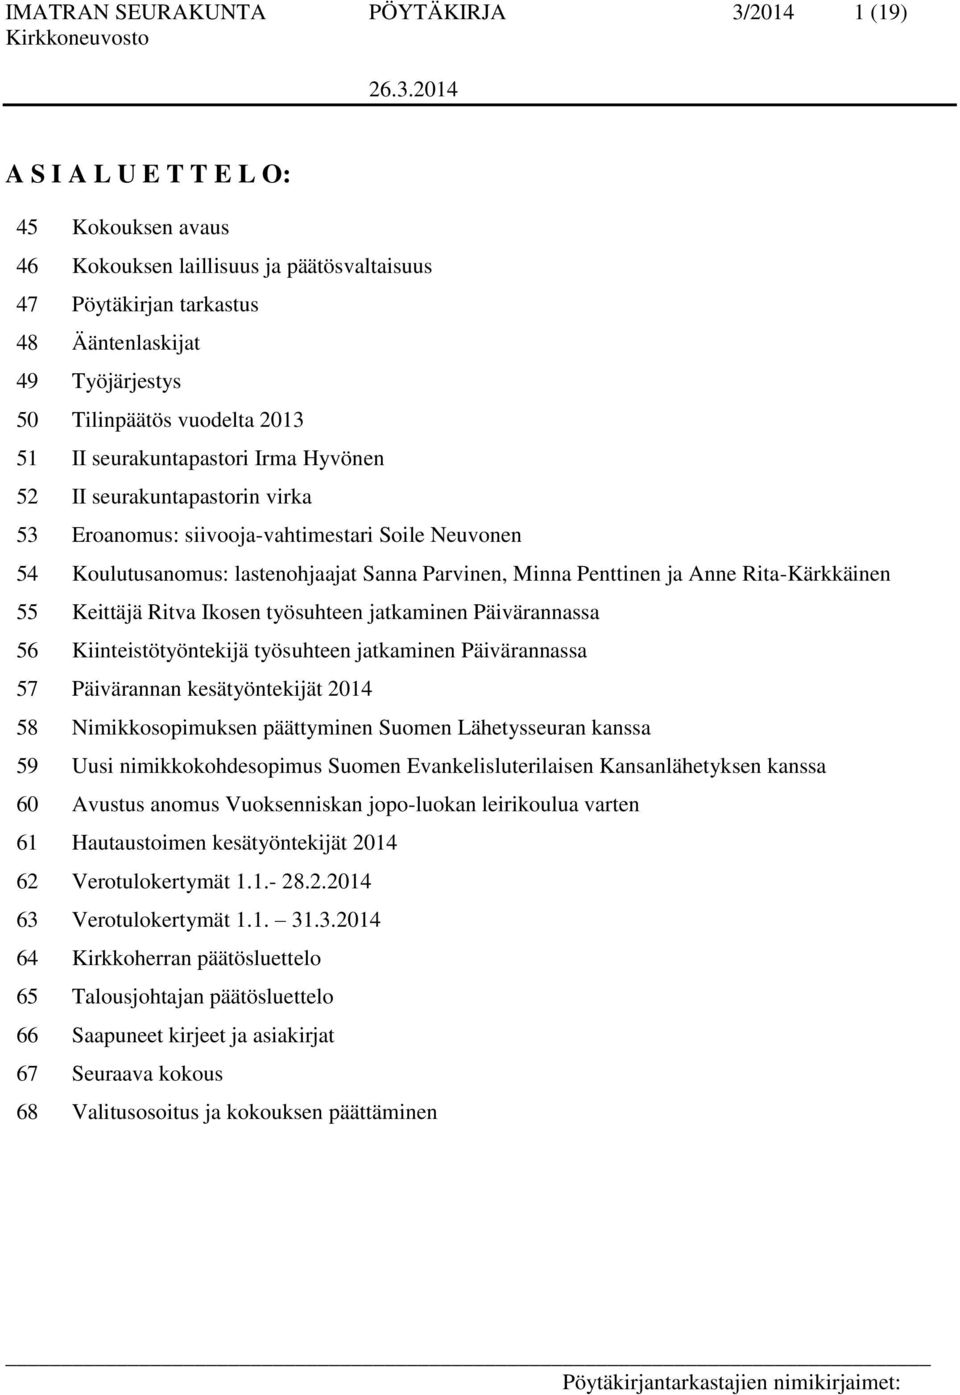 Minna Penttinen ja Anne Rita-Kärkkäinen 55 Keittäjä Ritva Ikosen työsuhteen jatkaminen Päivärannassa 56 Kiinteistötyöntekijä työsuhteen jatkaminen Päivärannassa 57 Päivärannan kesätyöntekijät 2014 58